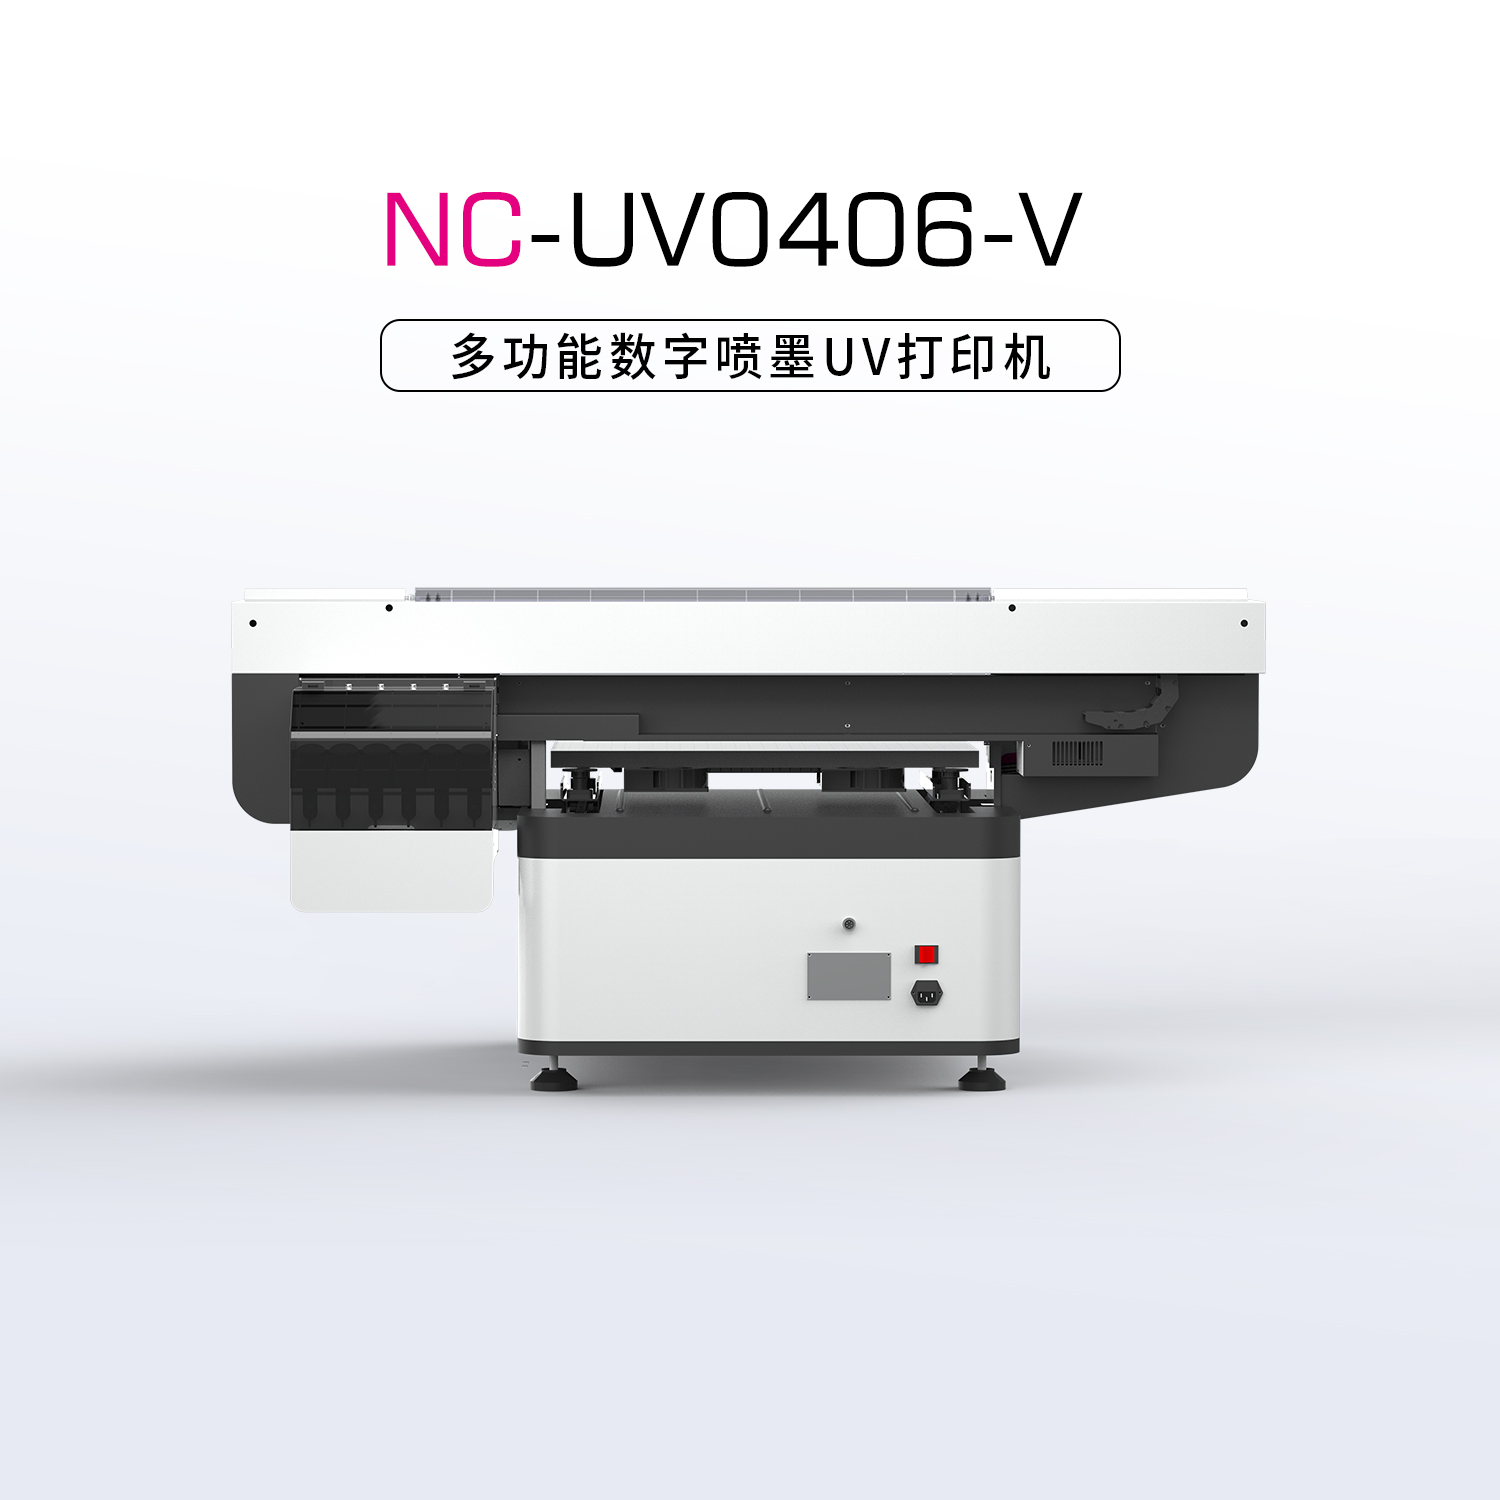 UV打印机打印头使用时需注意的事项